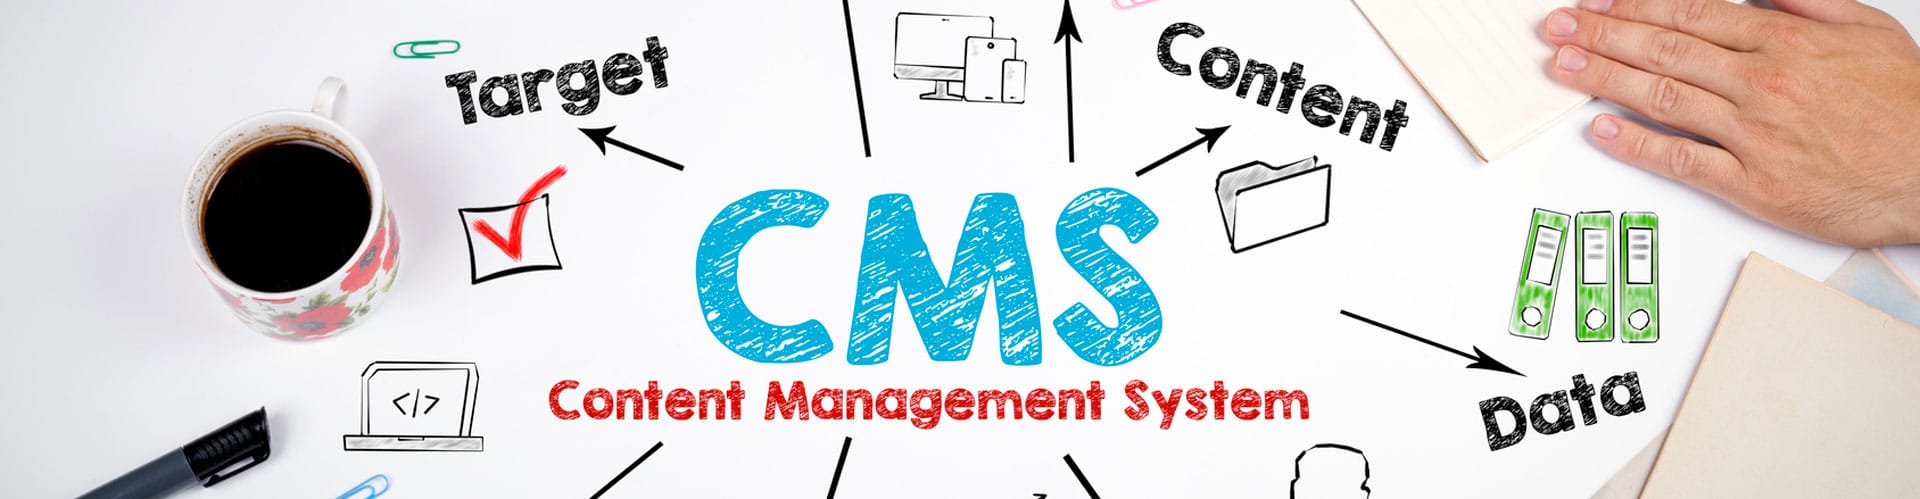 Quel CMS (Content Management System) choisir pour la création d'un site web en 2019 ?